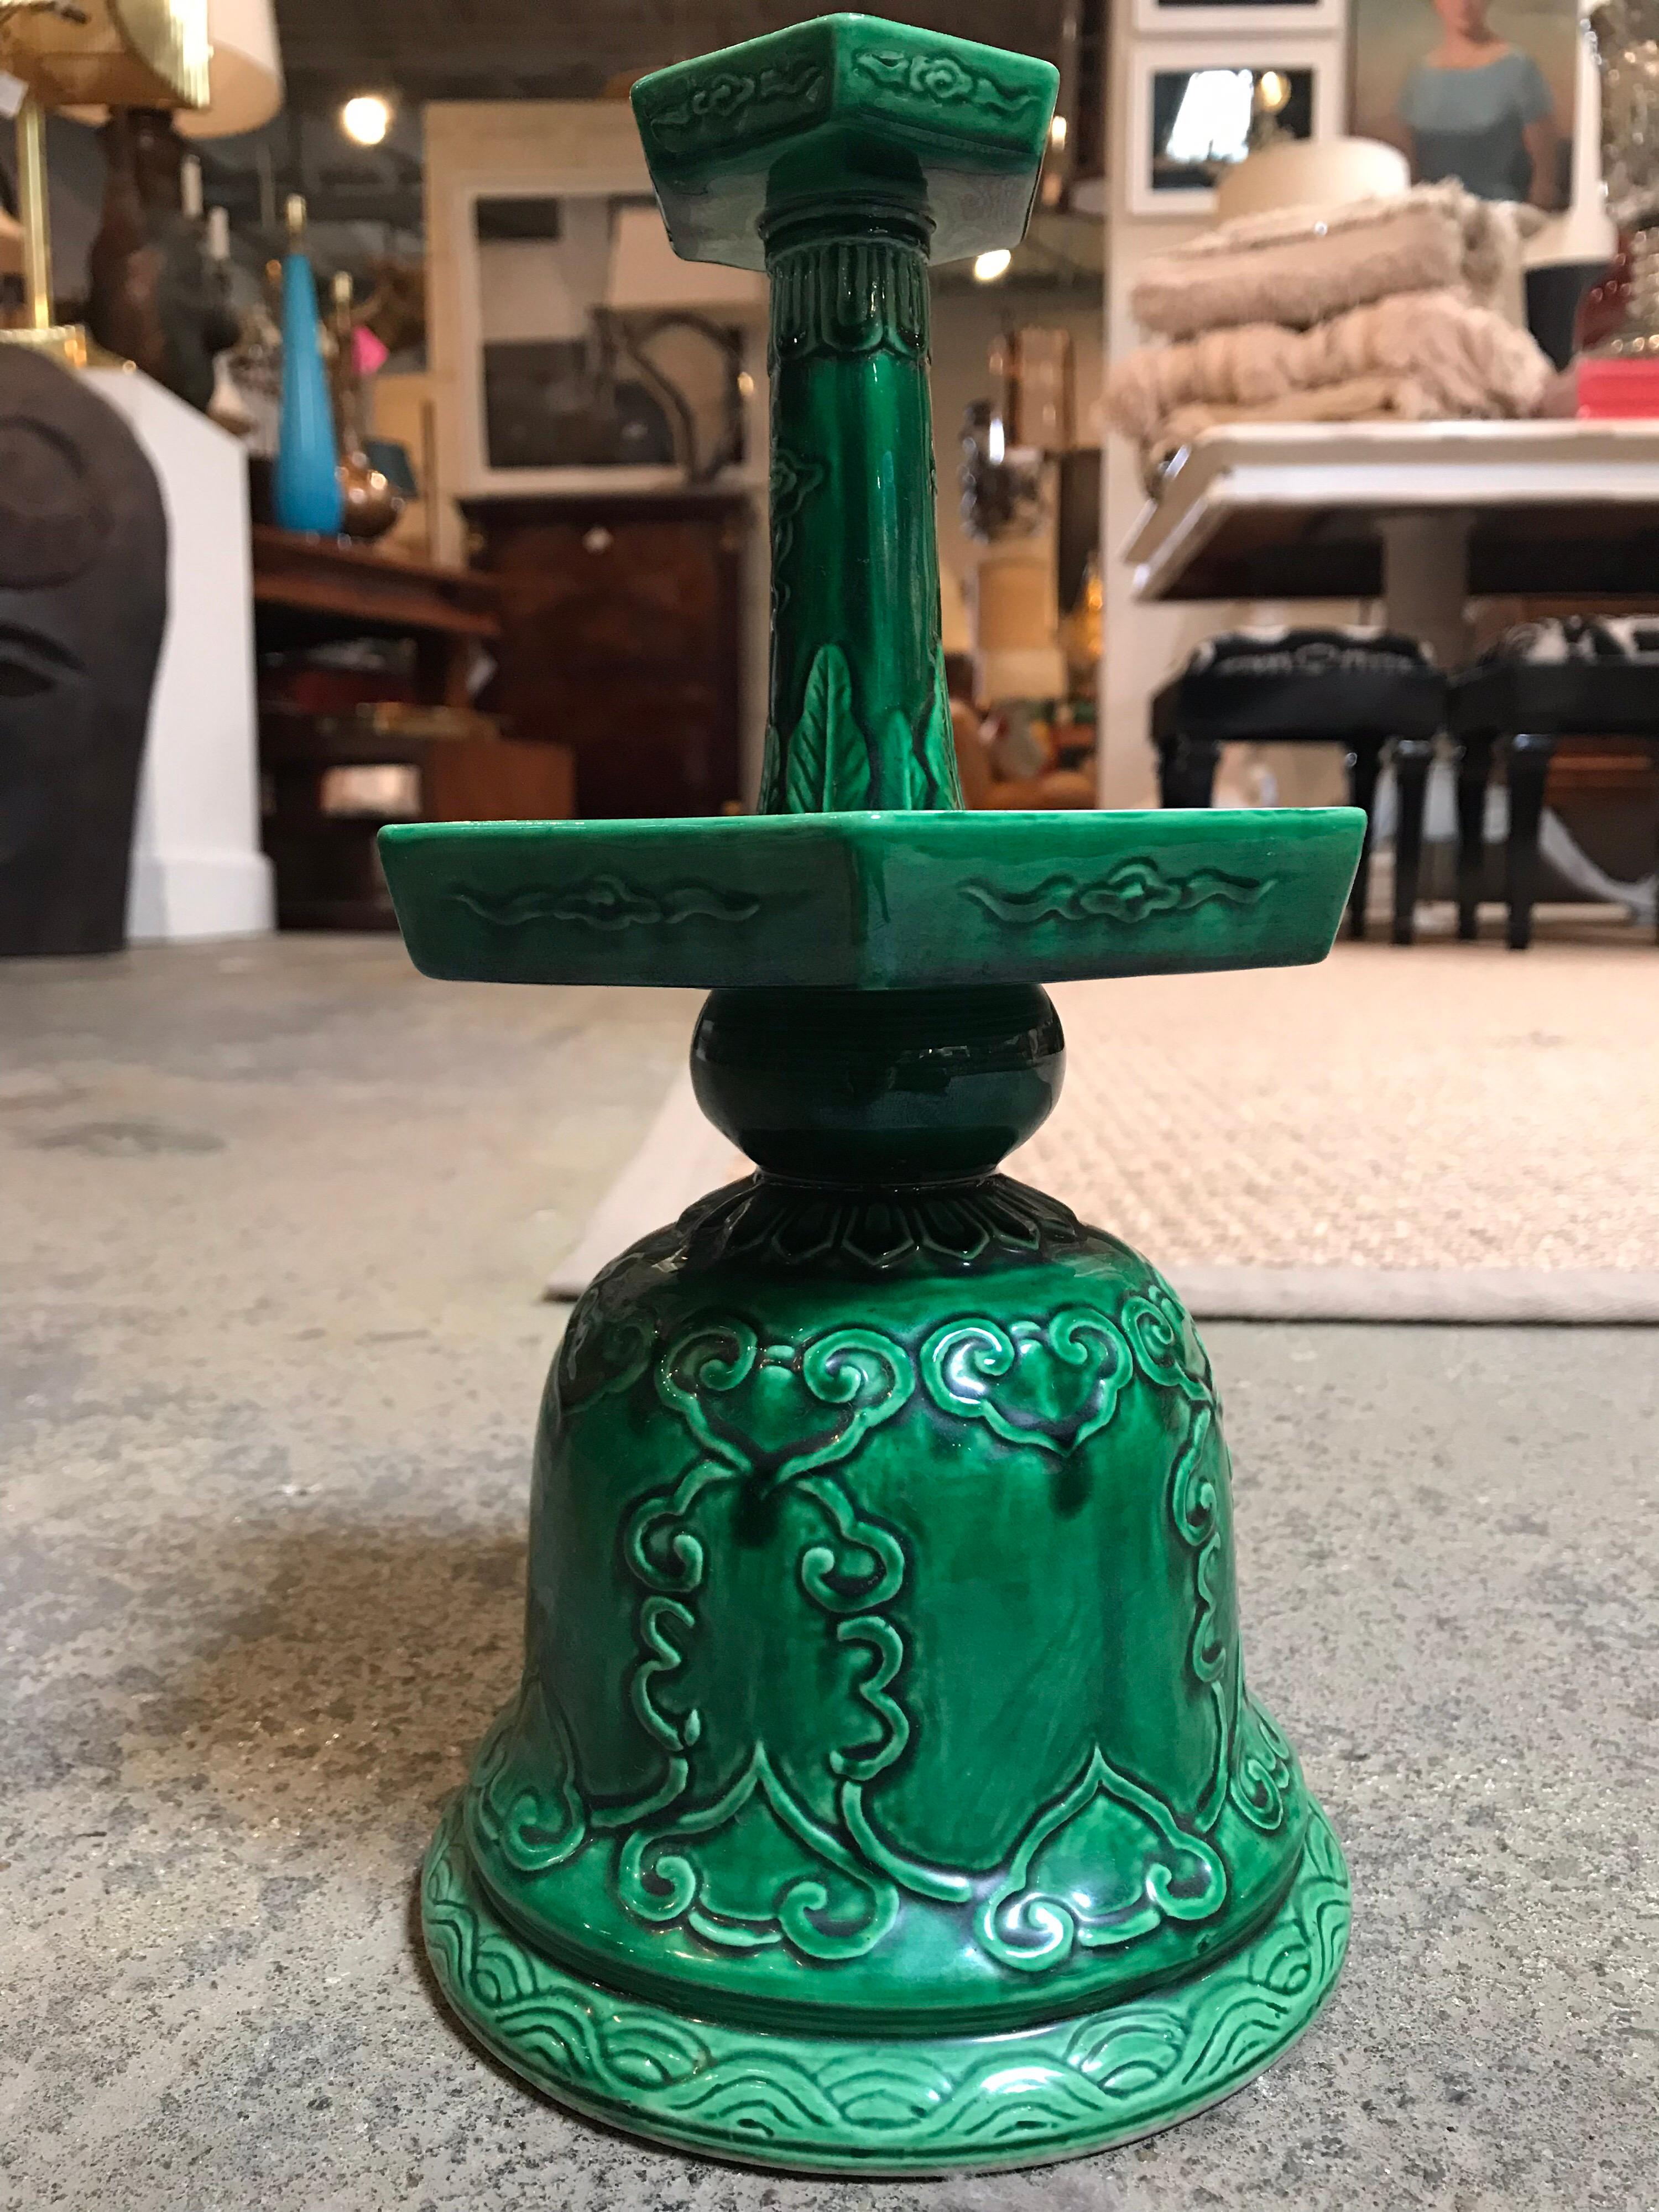 Diese chinesischen Kerzenhalter aus grüner Keramik werden im Paar geliefert. Sie sind glasiert und weisen mehrere interessante handgefertigte Designs und Muster auf der Oberfläche auf. Auf der Unterseite des Stücks befindet sich außerdem ein